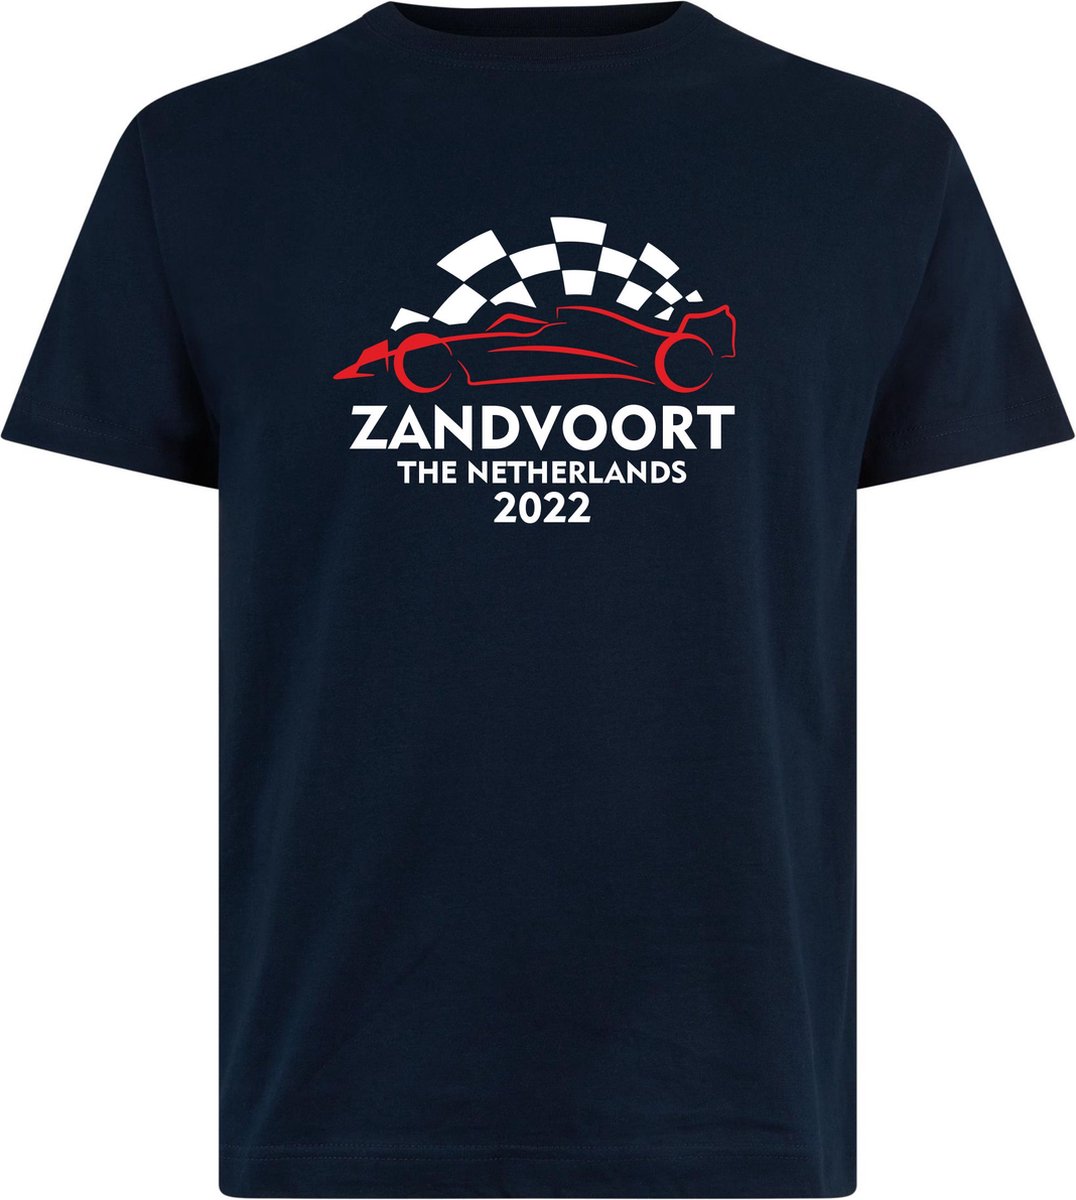 T-shirt Zandvoort 2022 met raceauto | Max Verstappen / Red Bull Racing / Formule 1 fan | Grand Prix Circuit Zandvoort | kleding shirt | Navy | maat XL